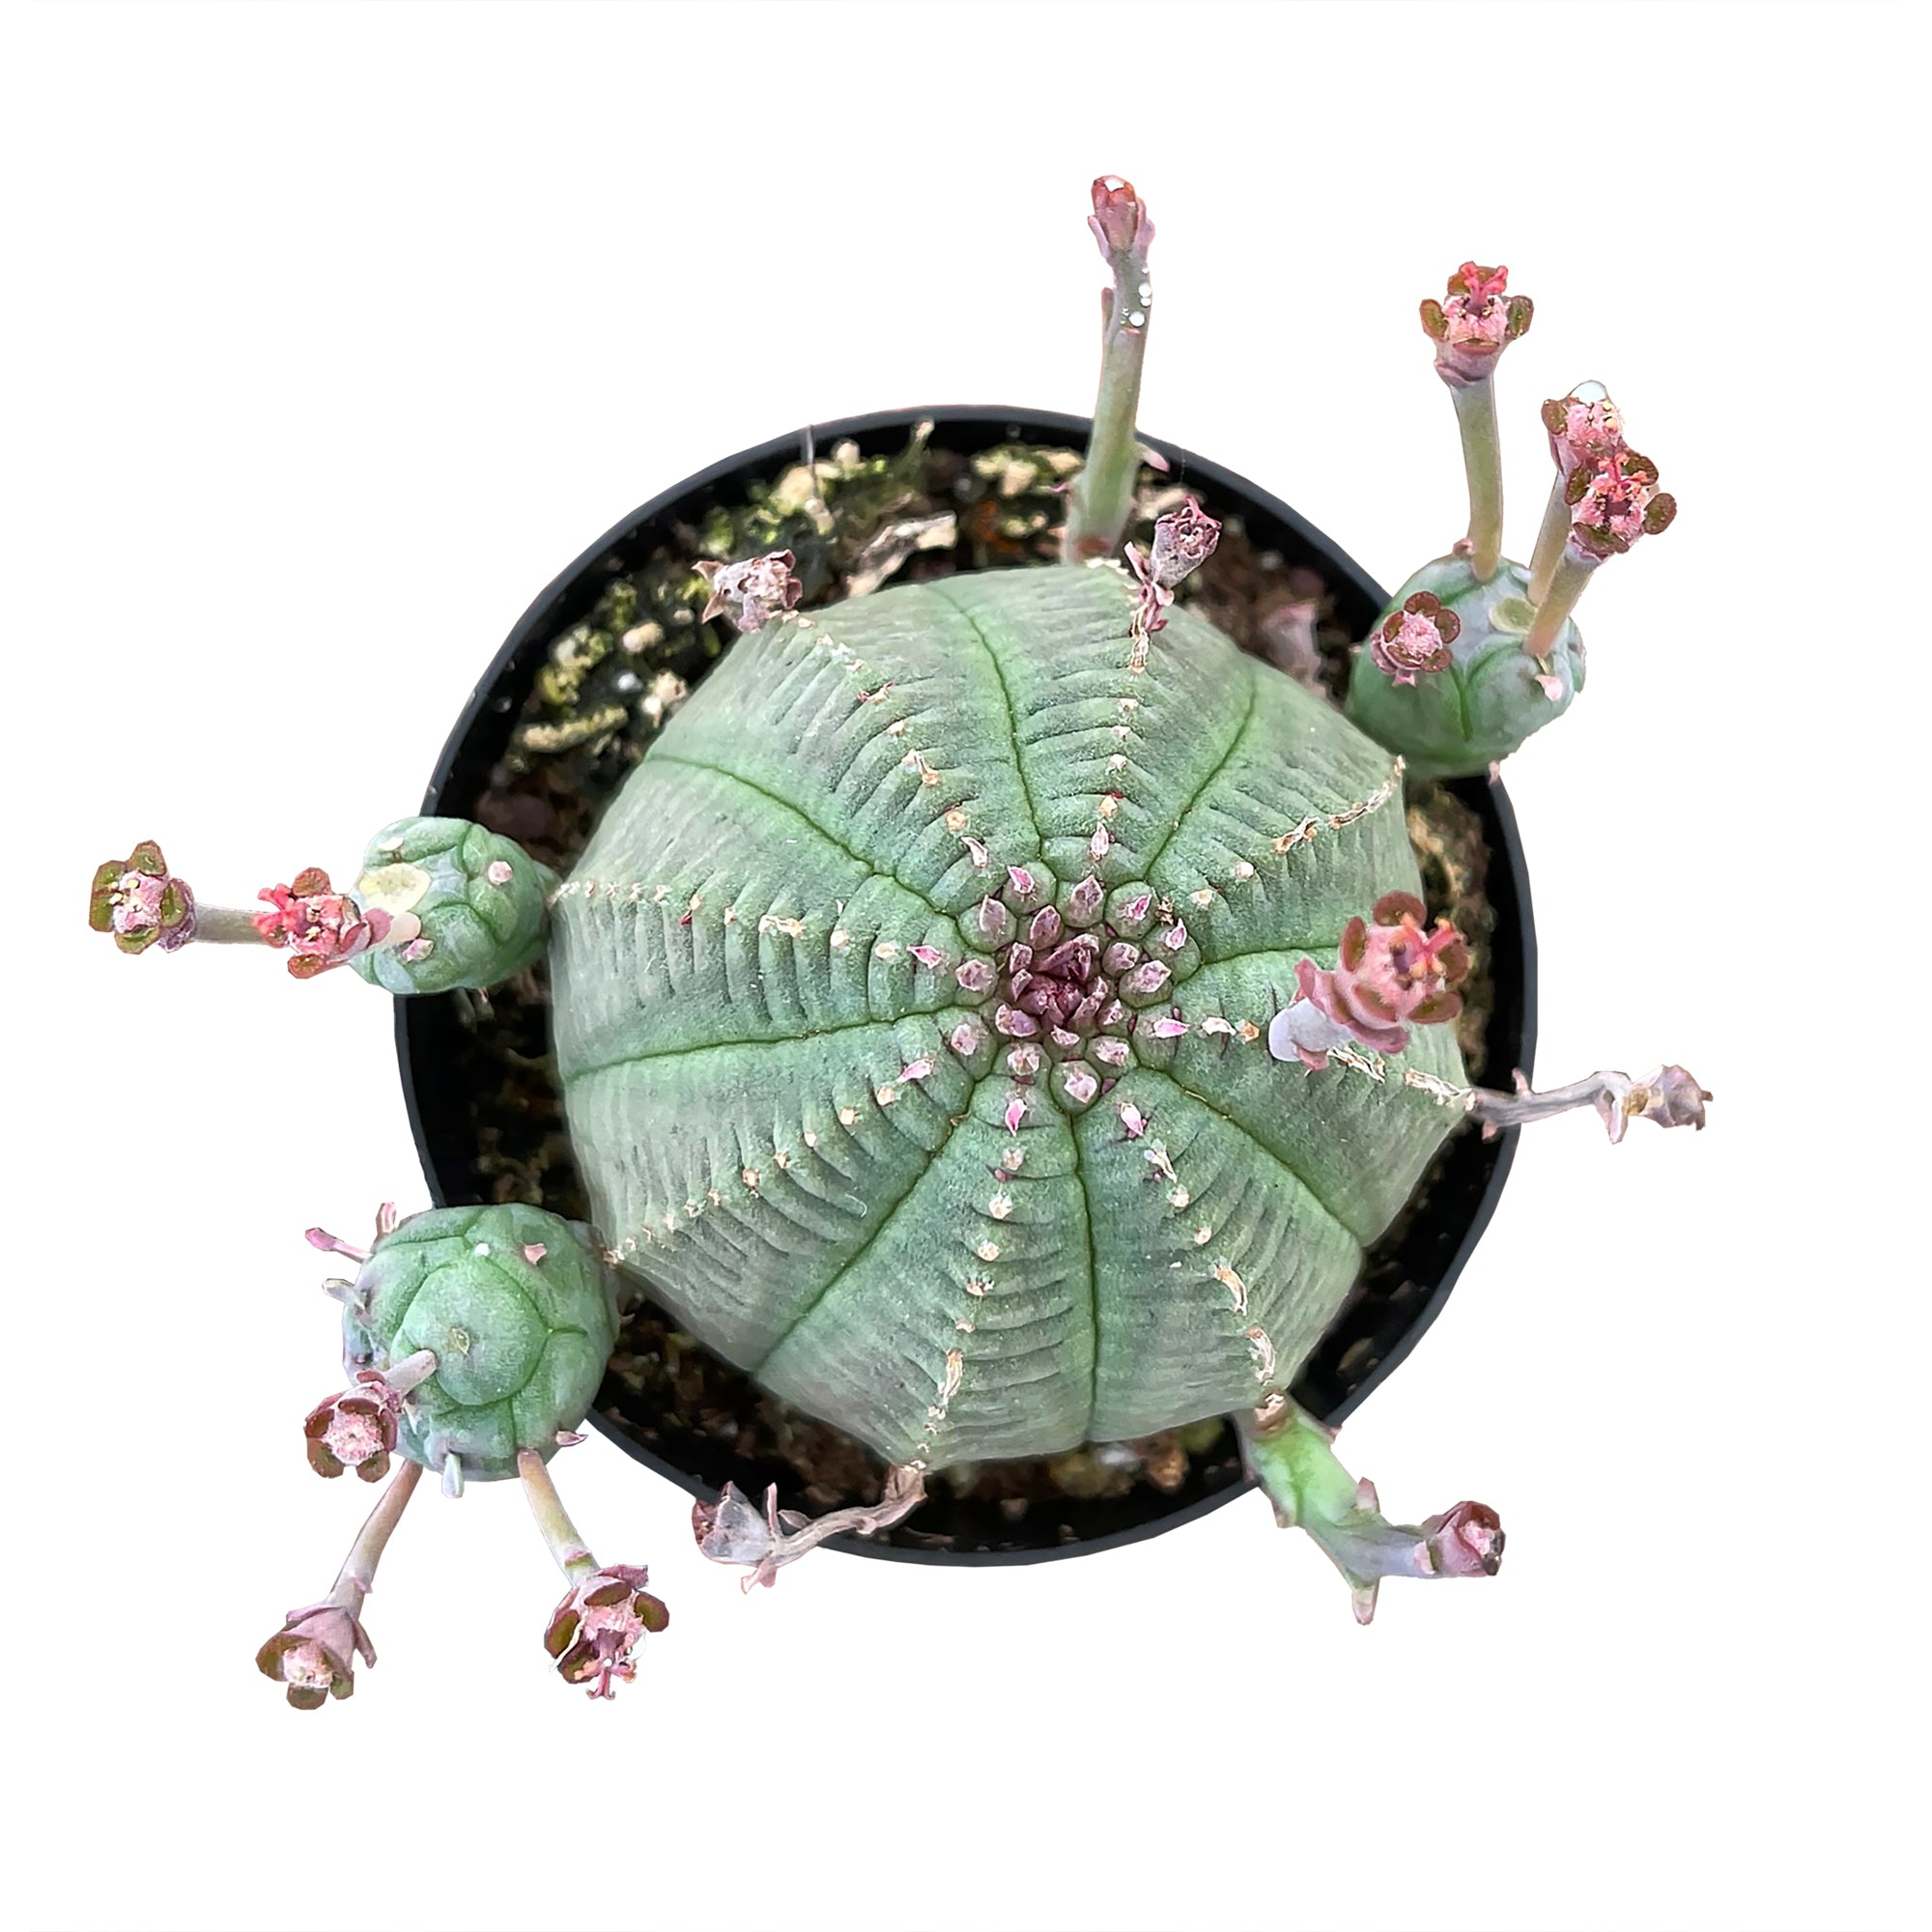 Euphorbia Obesa Hybrid